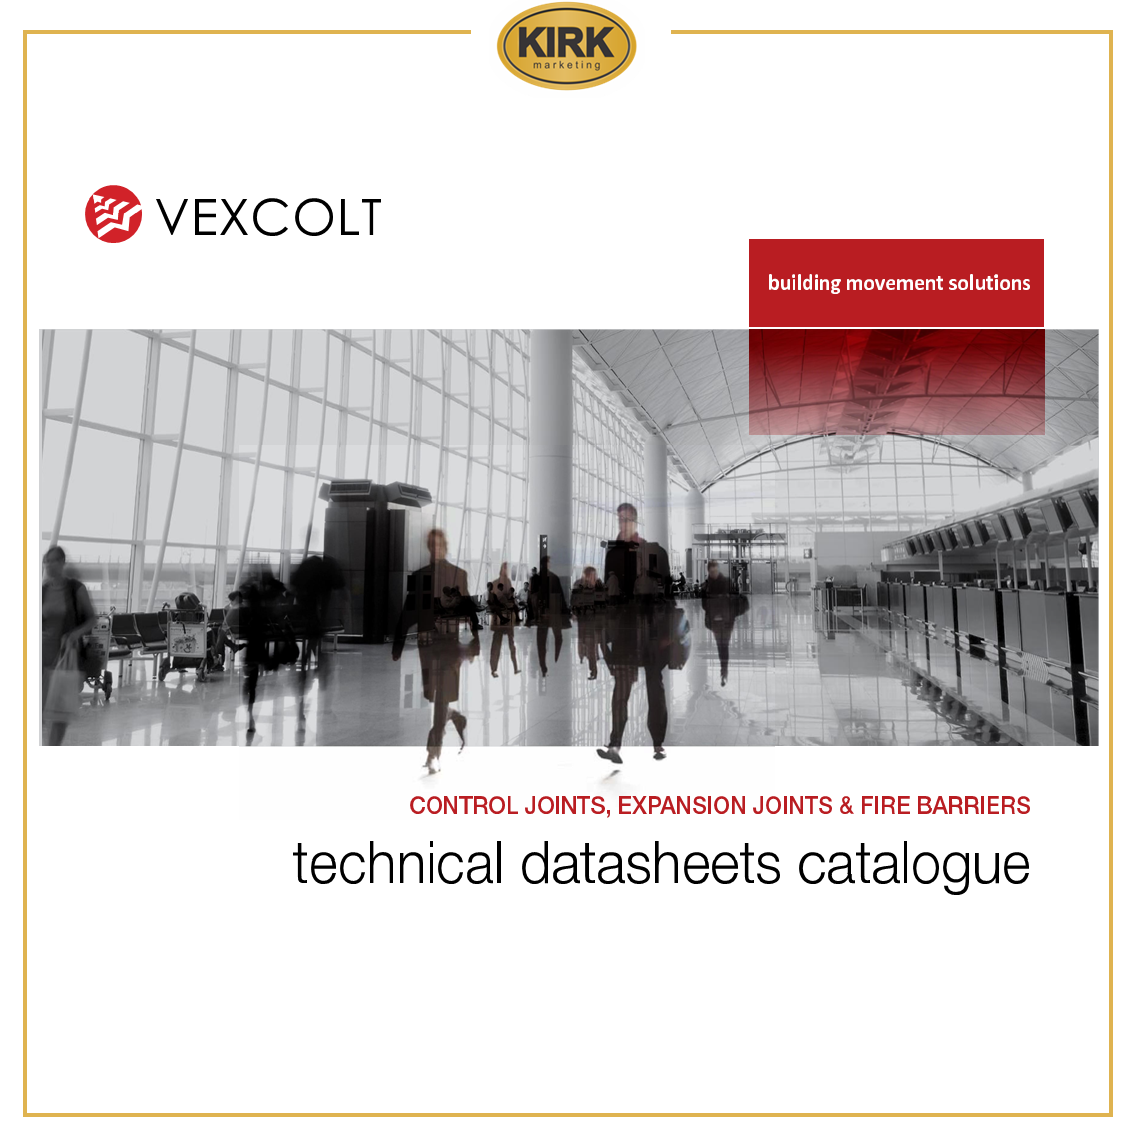 KIRK - Vexcolt-Catalogue Catalogue